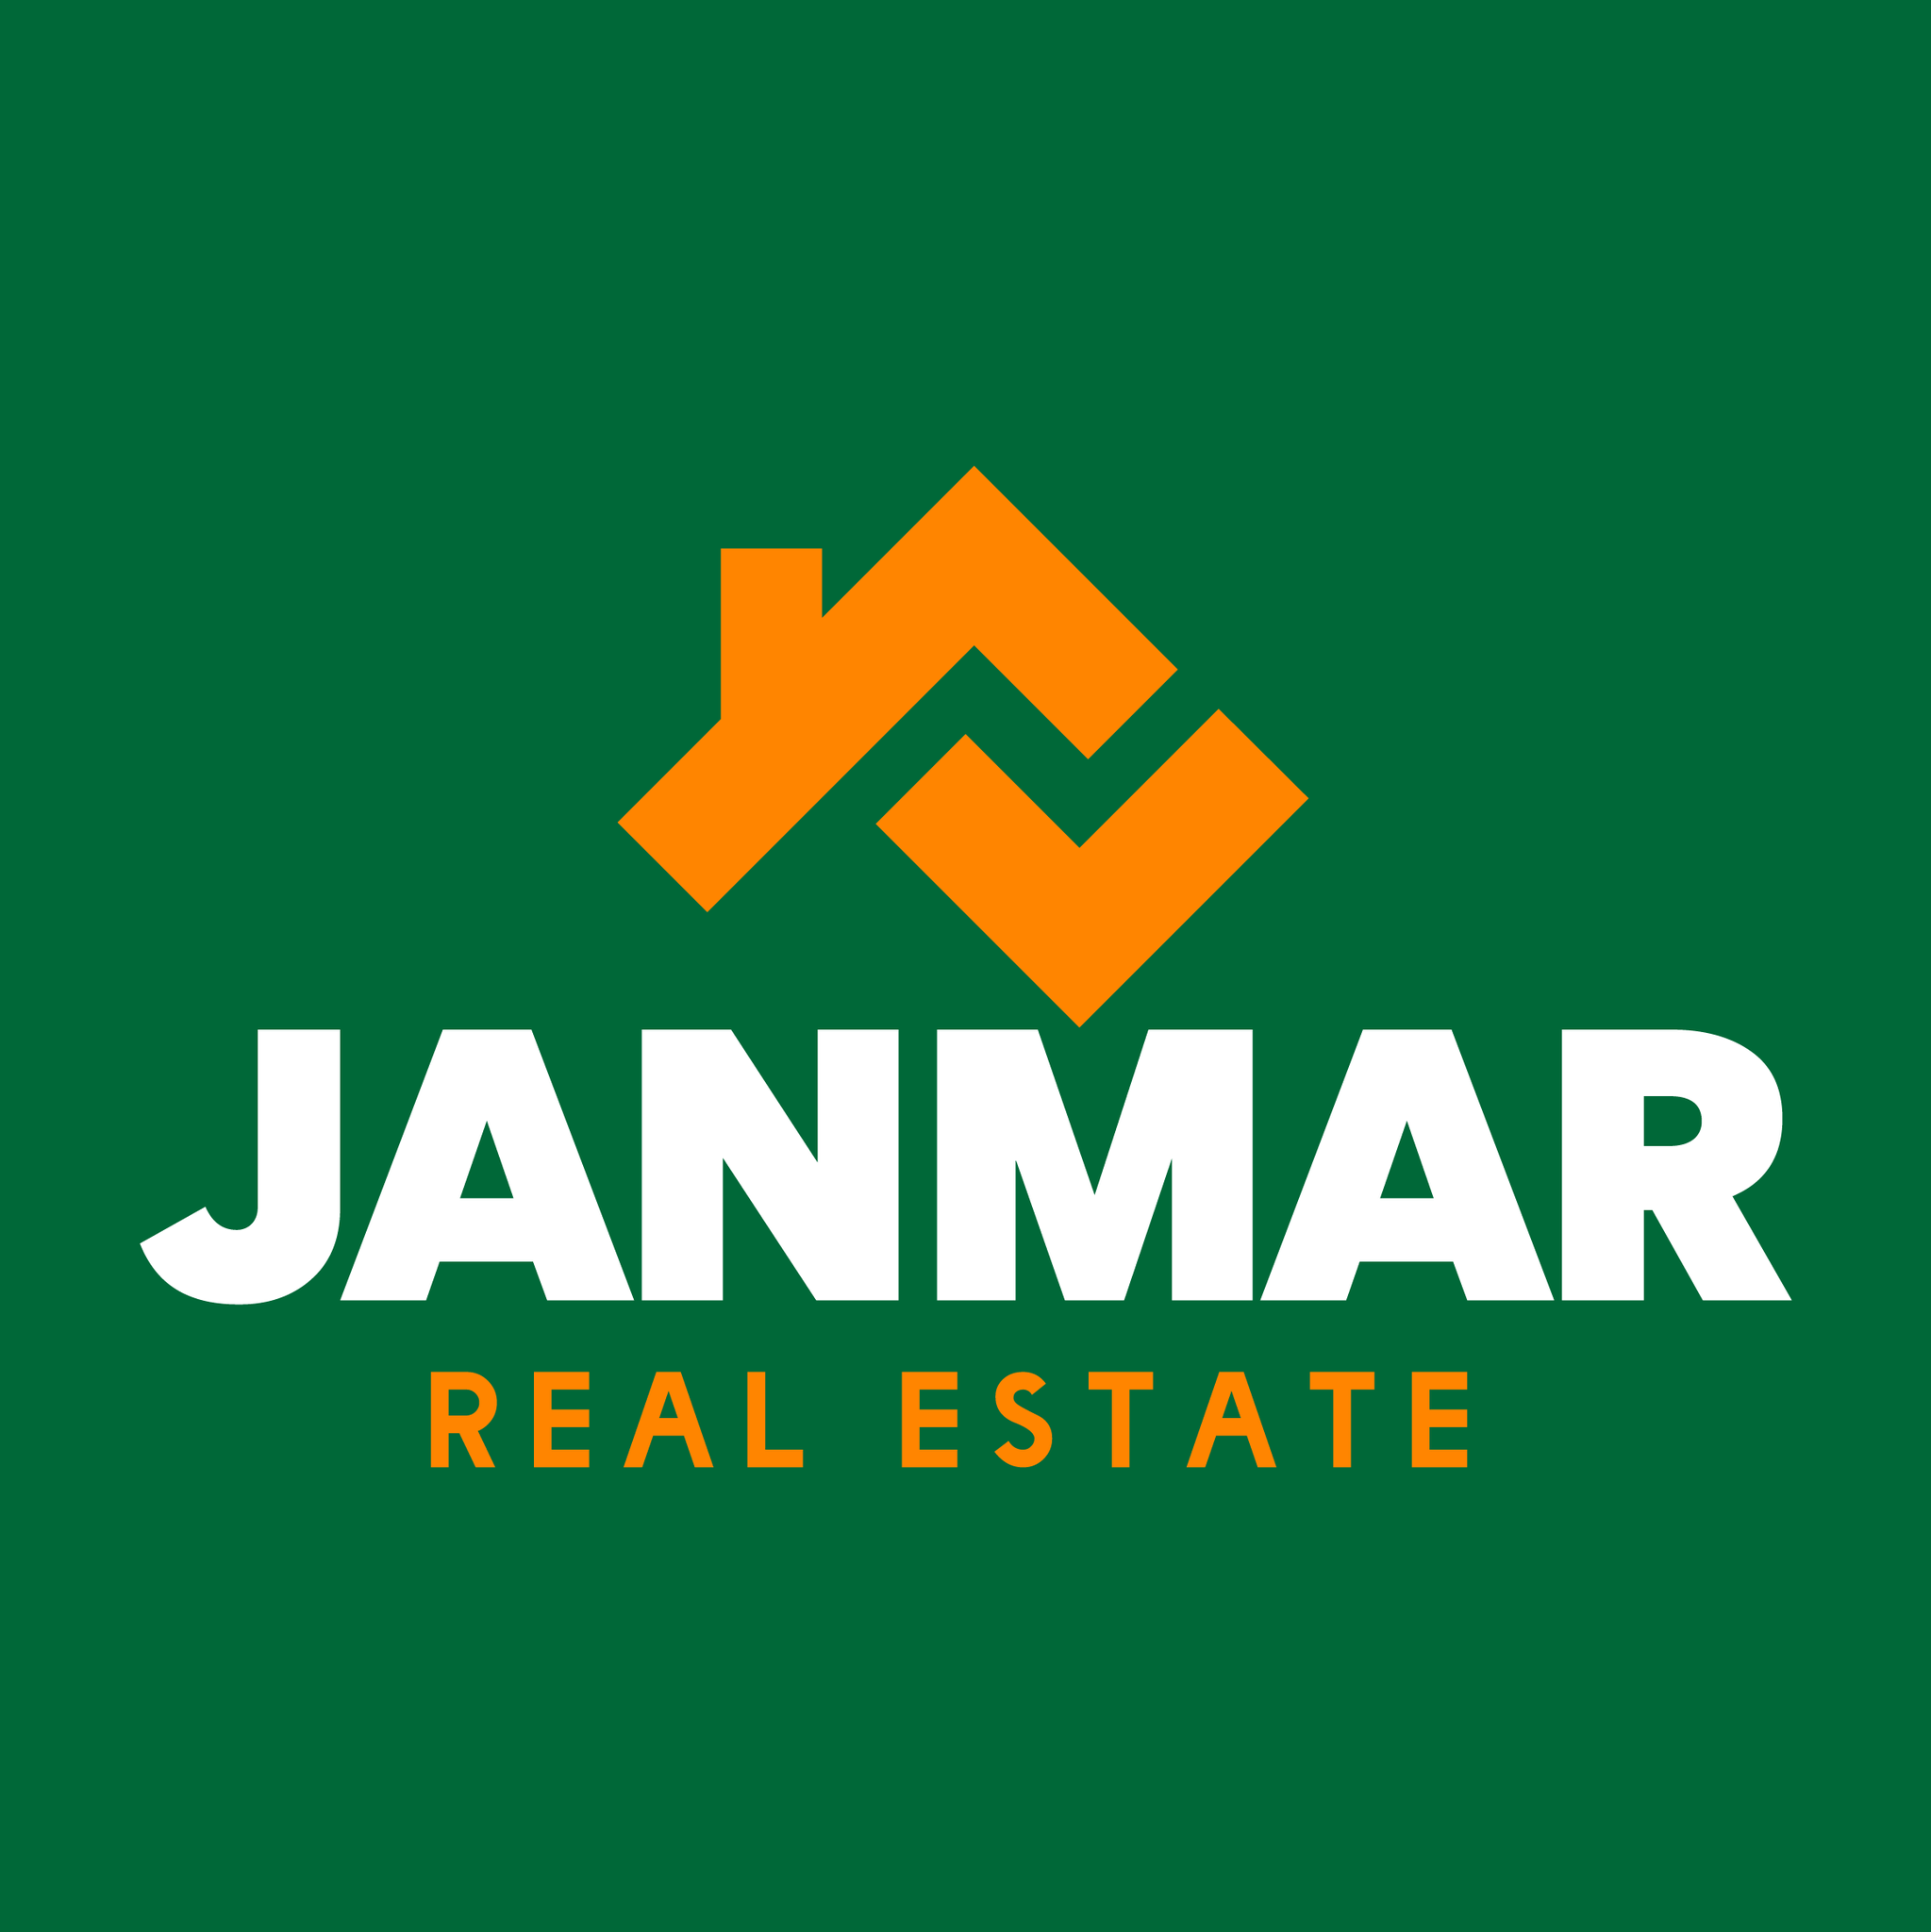 Janmar Real Estate